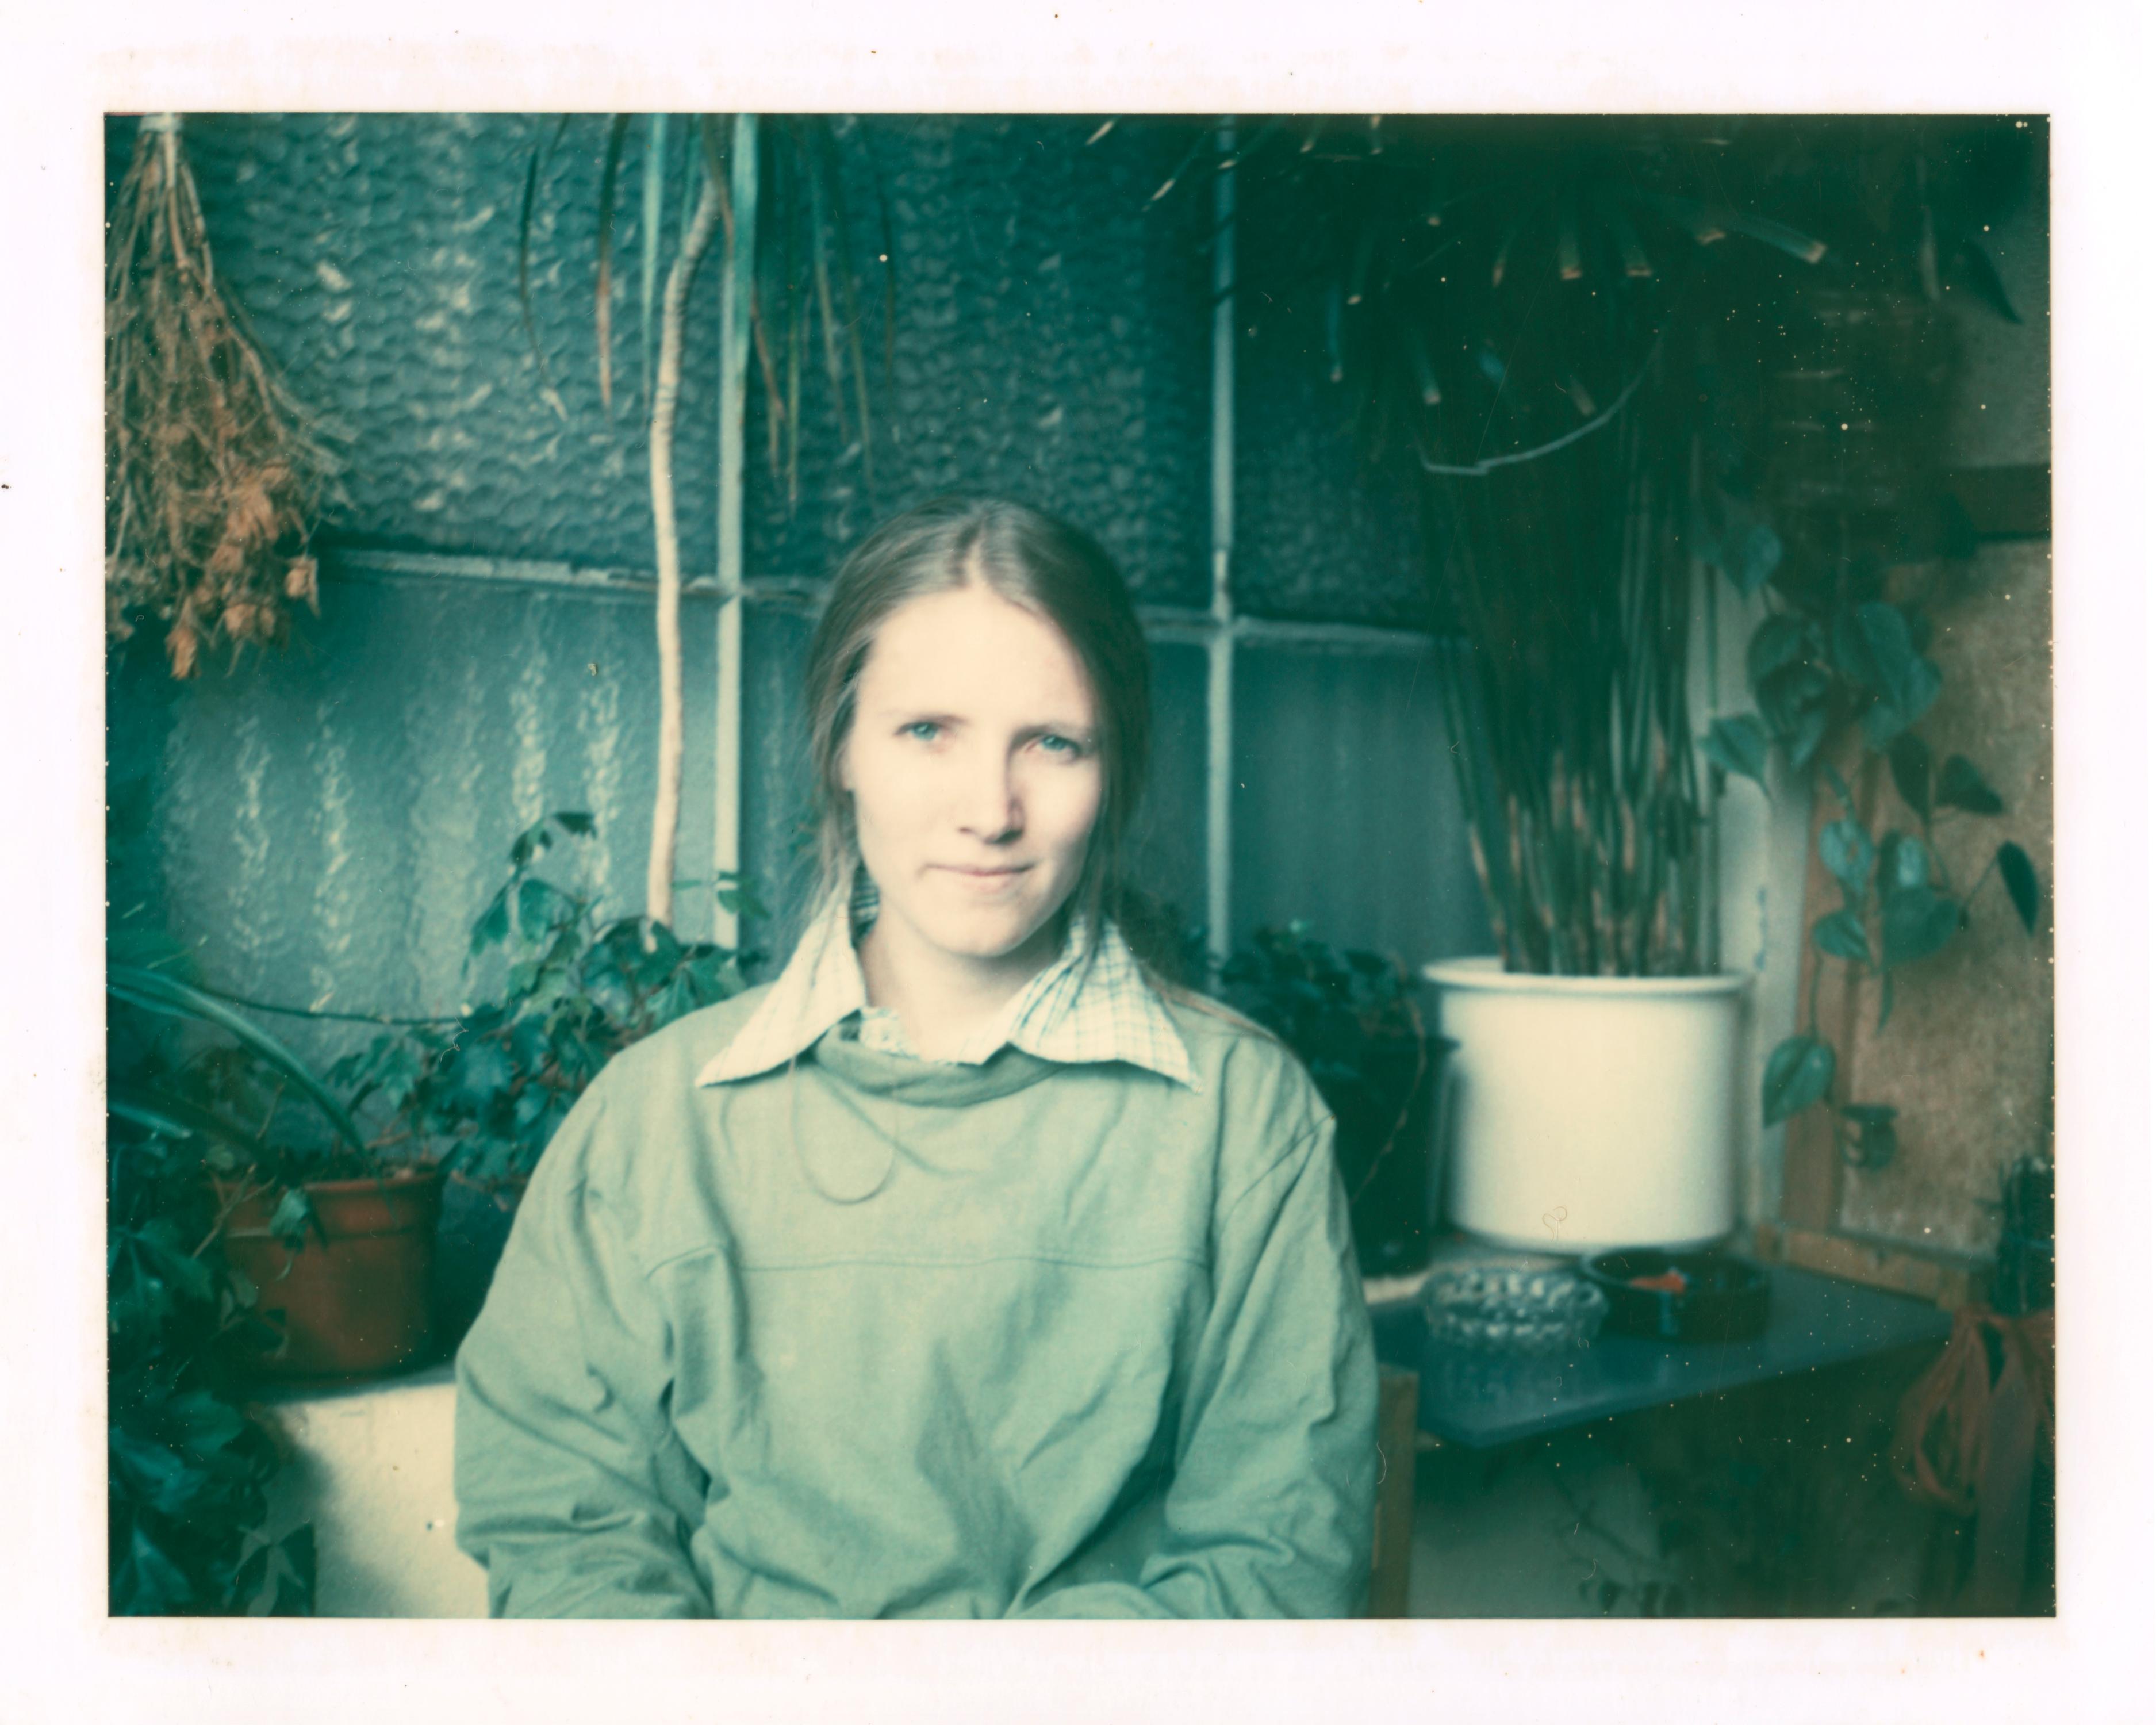 Stefanie Schneider Portrait Photograph - Self Portrait in Green, 1993